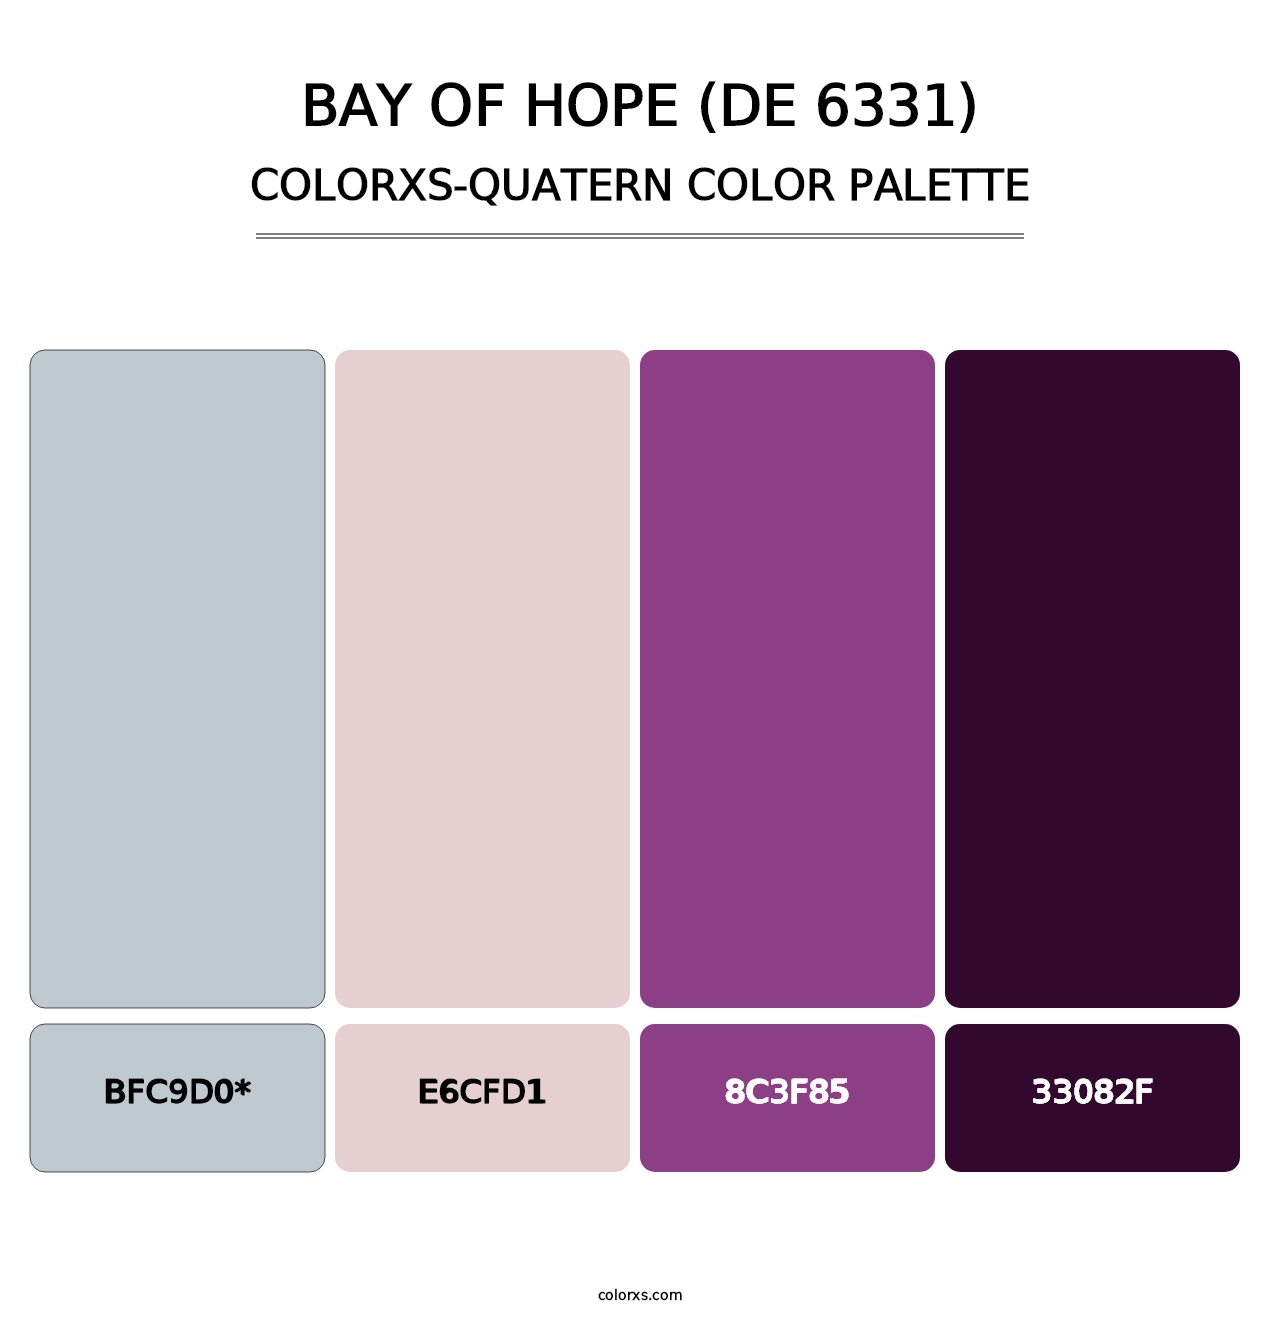 Bay of Hope (DE 6331) - Colorxs Quatern Palette